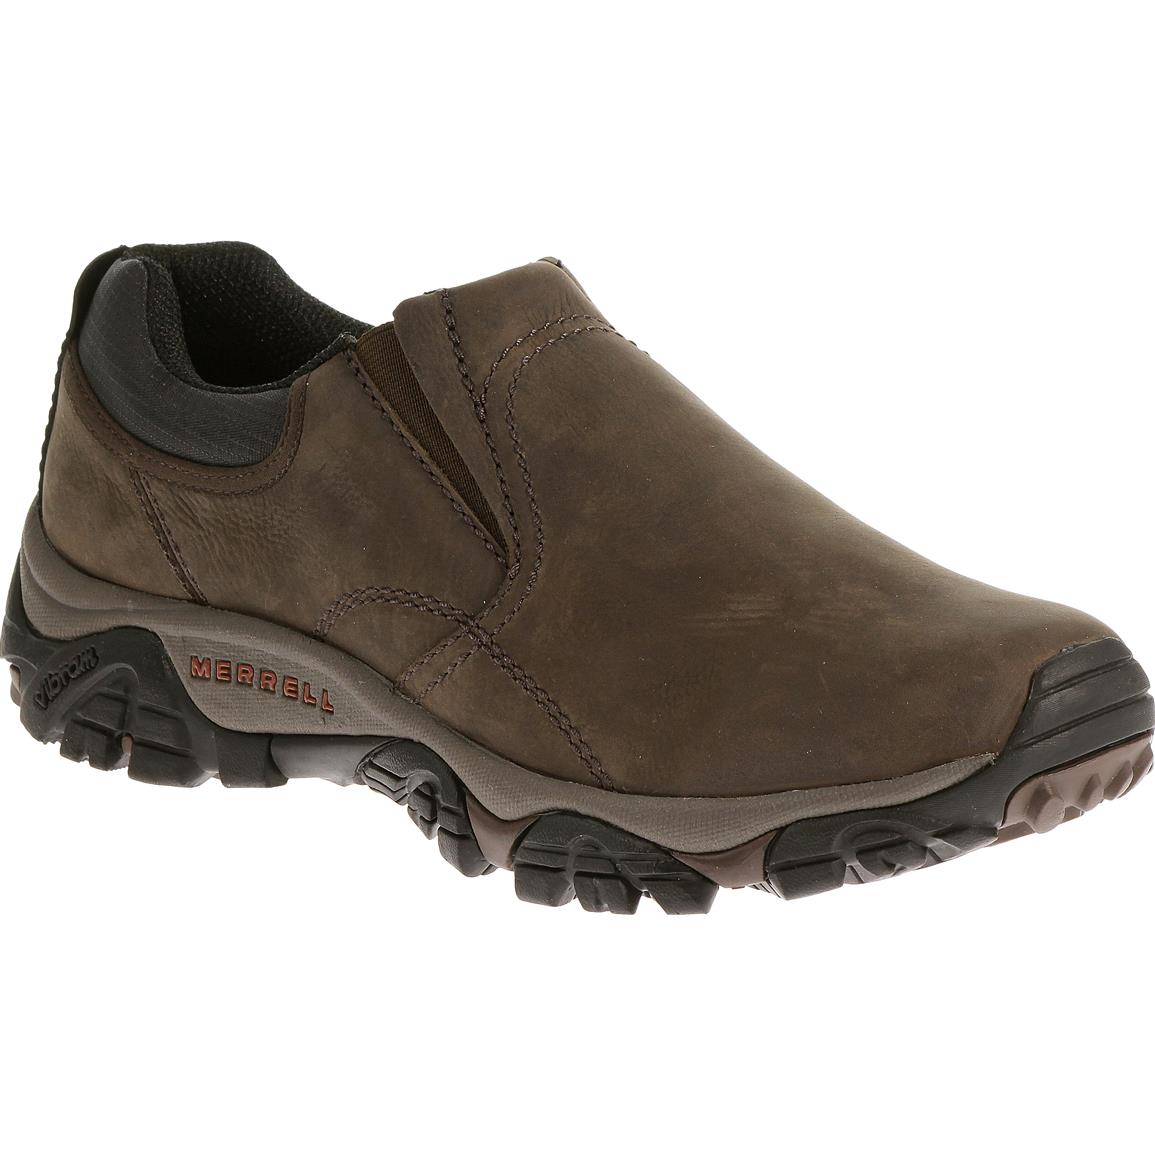 Merrell Moab Rover Mocs, Espresso - 601338, Hiking Boots & Shoes